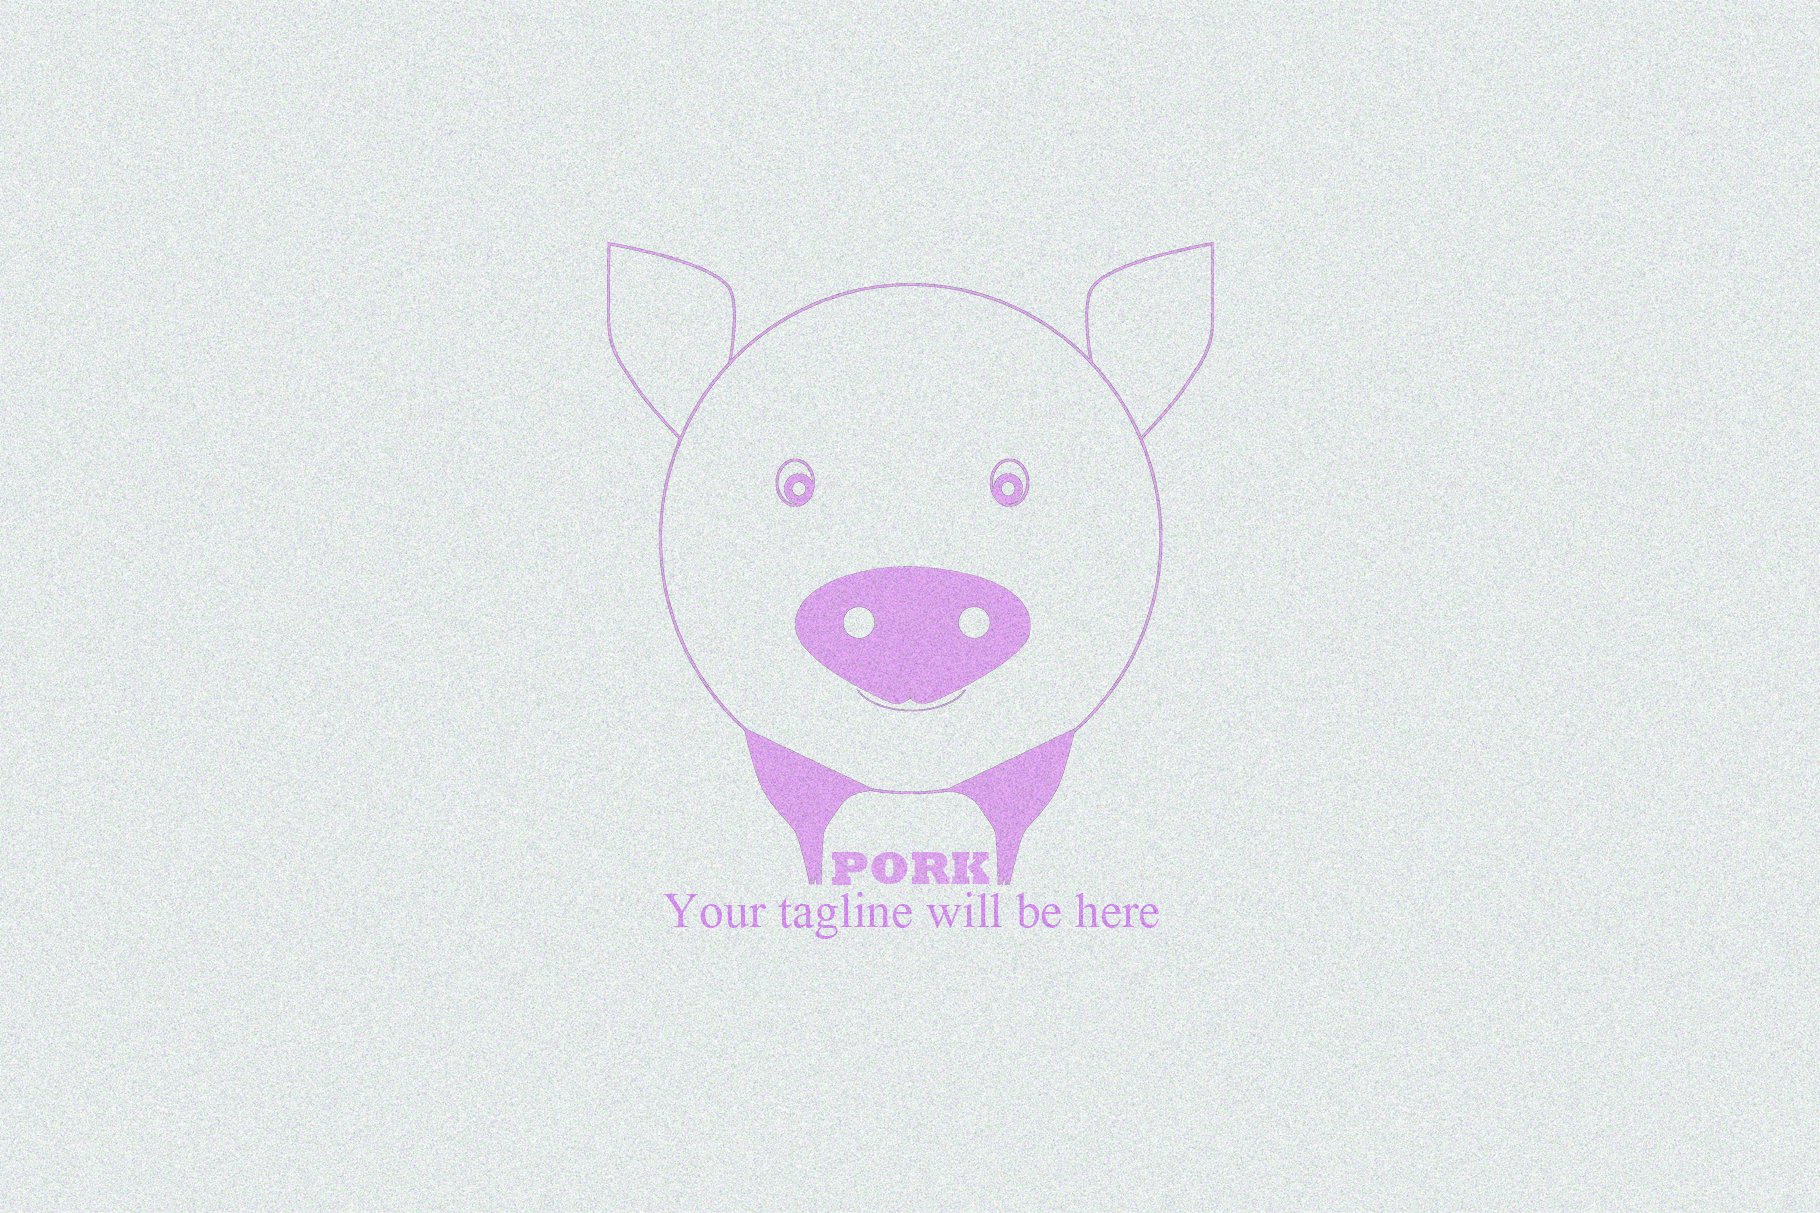 Pork Logo cover image.